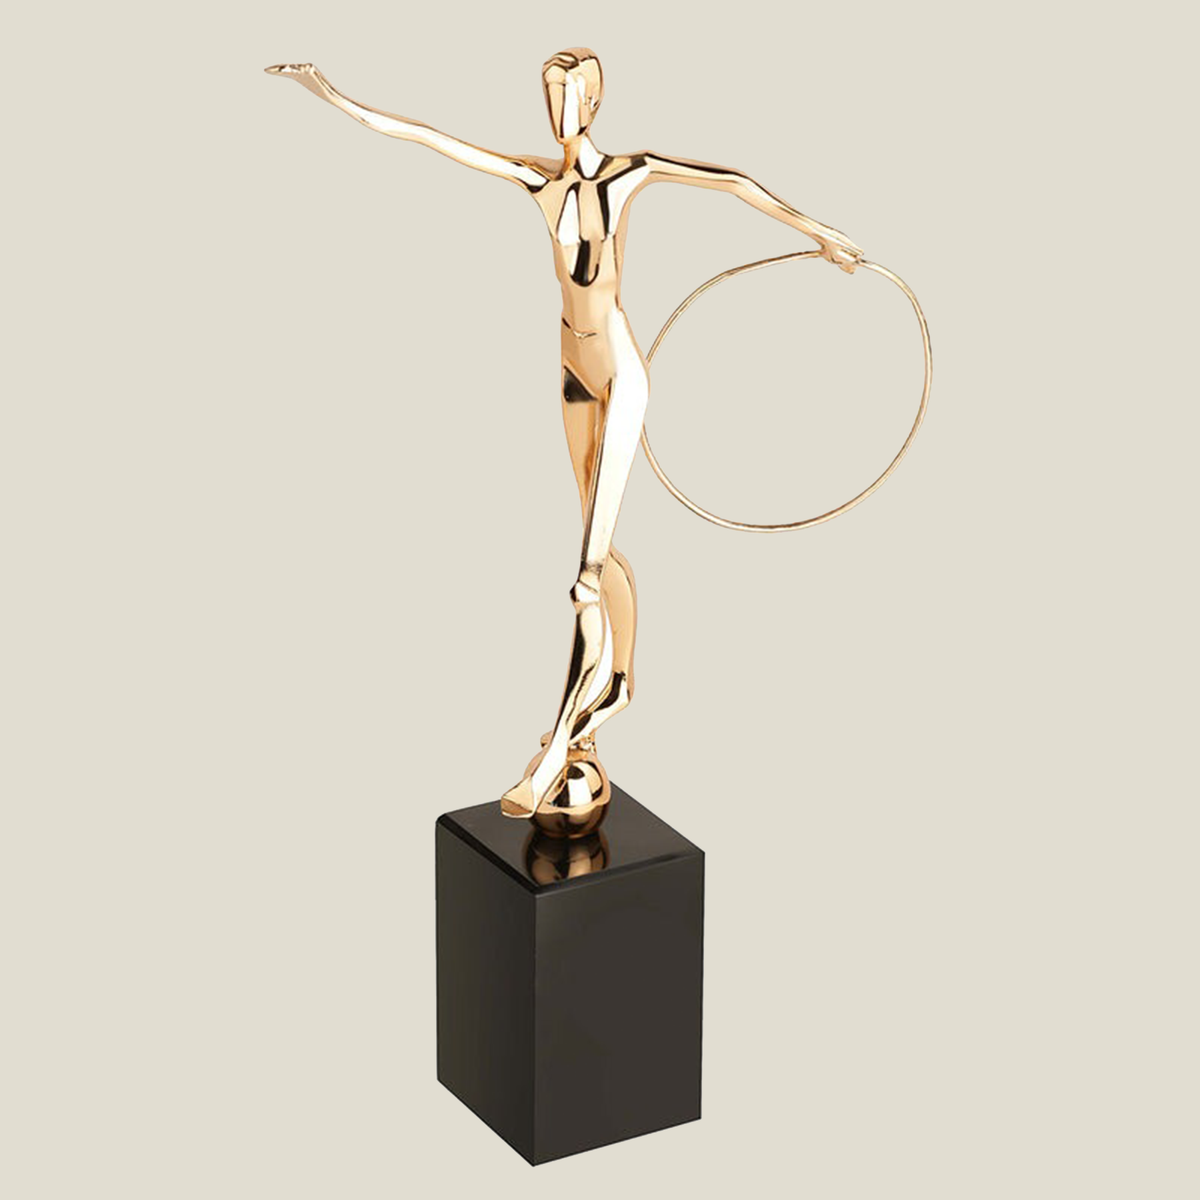 Figurine (Rhythmic Gymnastics Hoops) - Gold